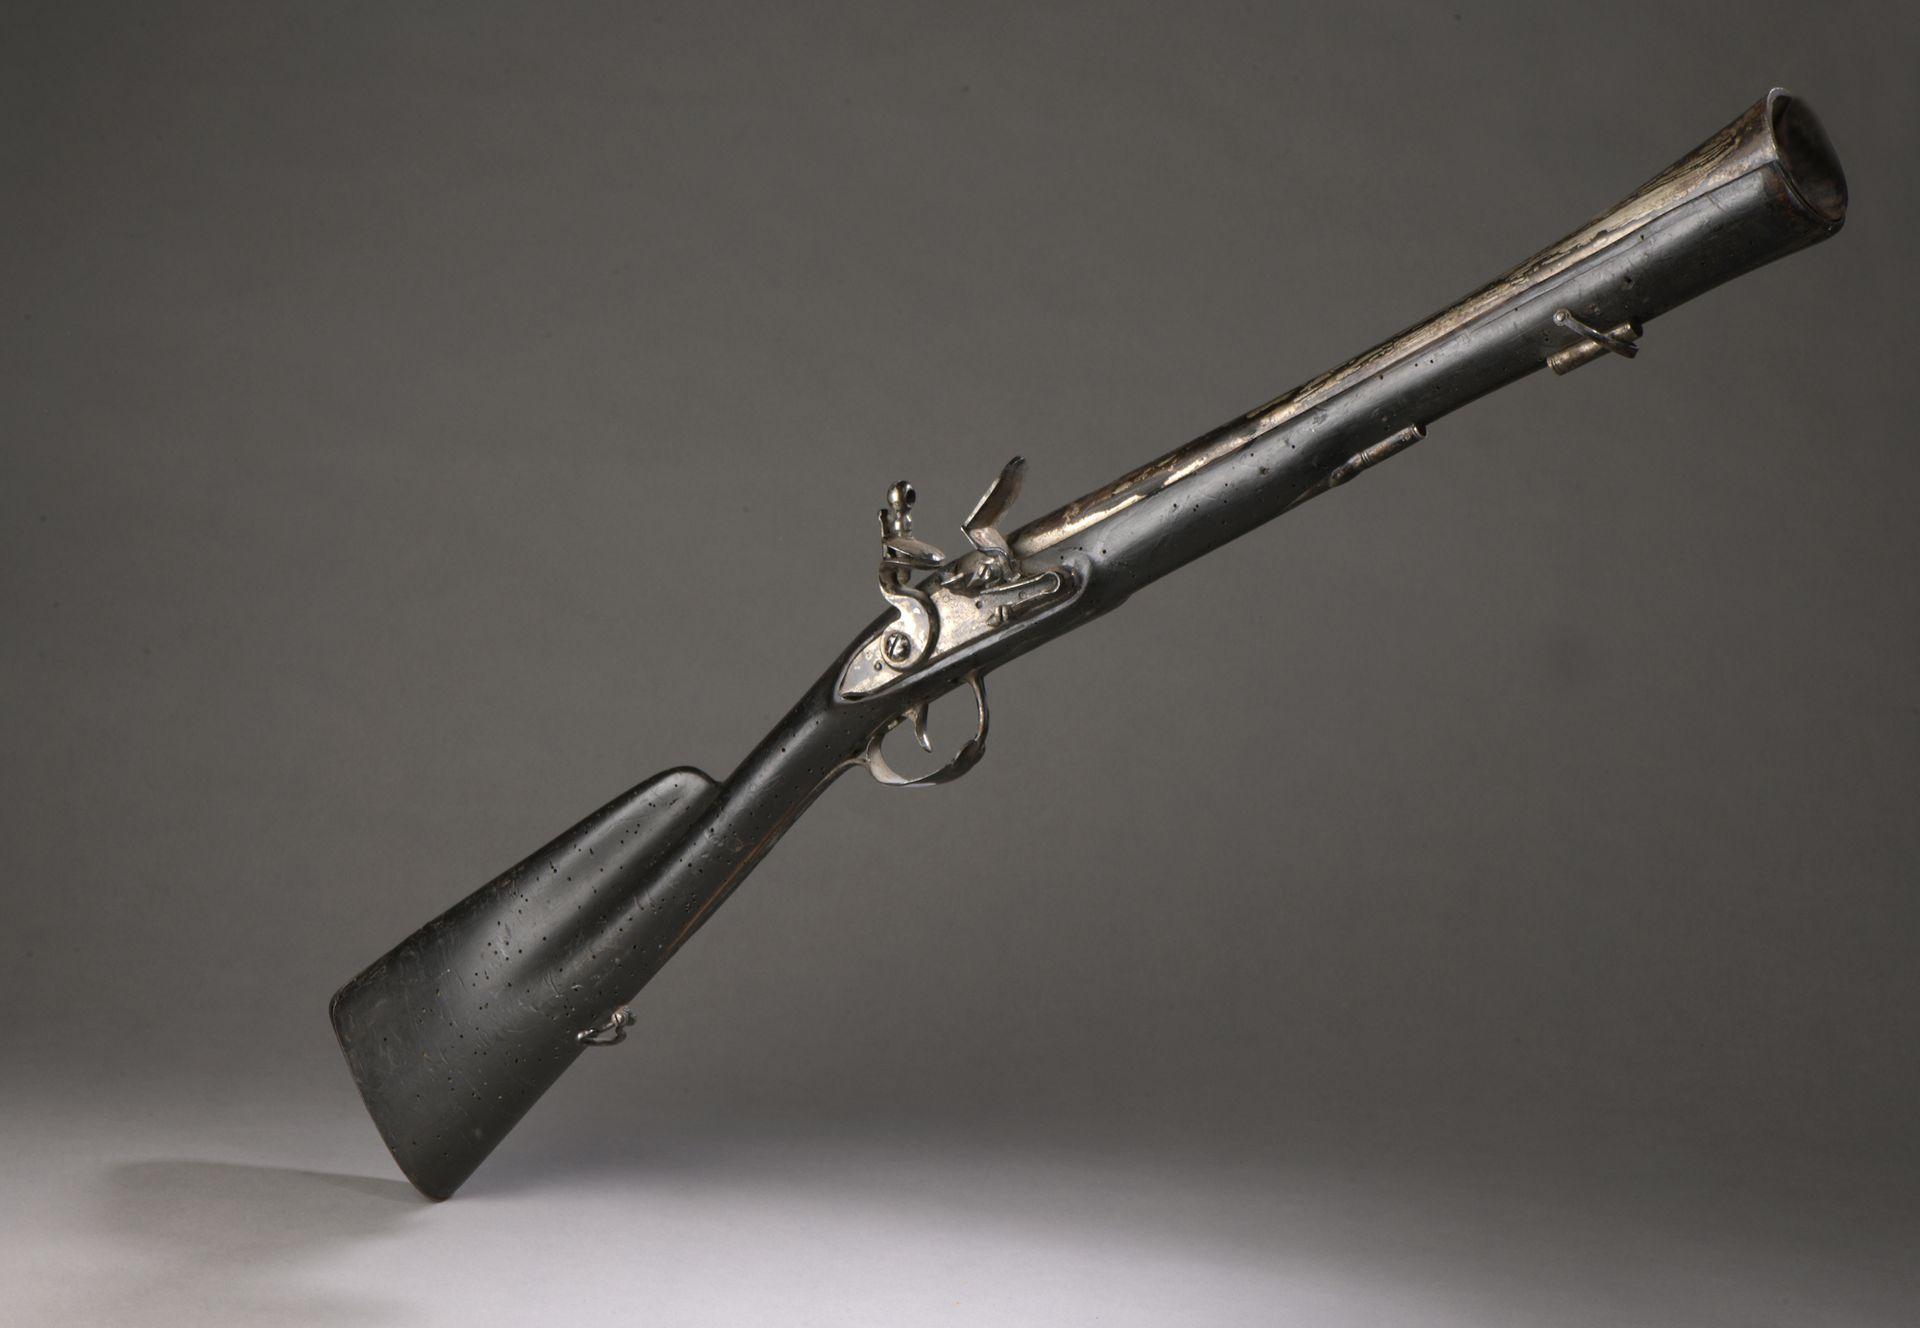 Null 燧发枪旅行枪。强力雷击的铁制枪管。铁制配件。胡桃木制的枪支，黑色的（有非常多的凹陷）。

18世纪末。

H.83厘米